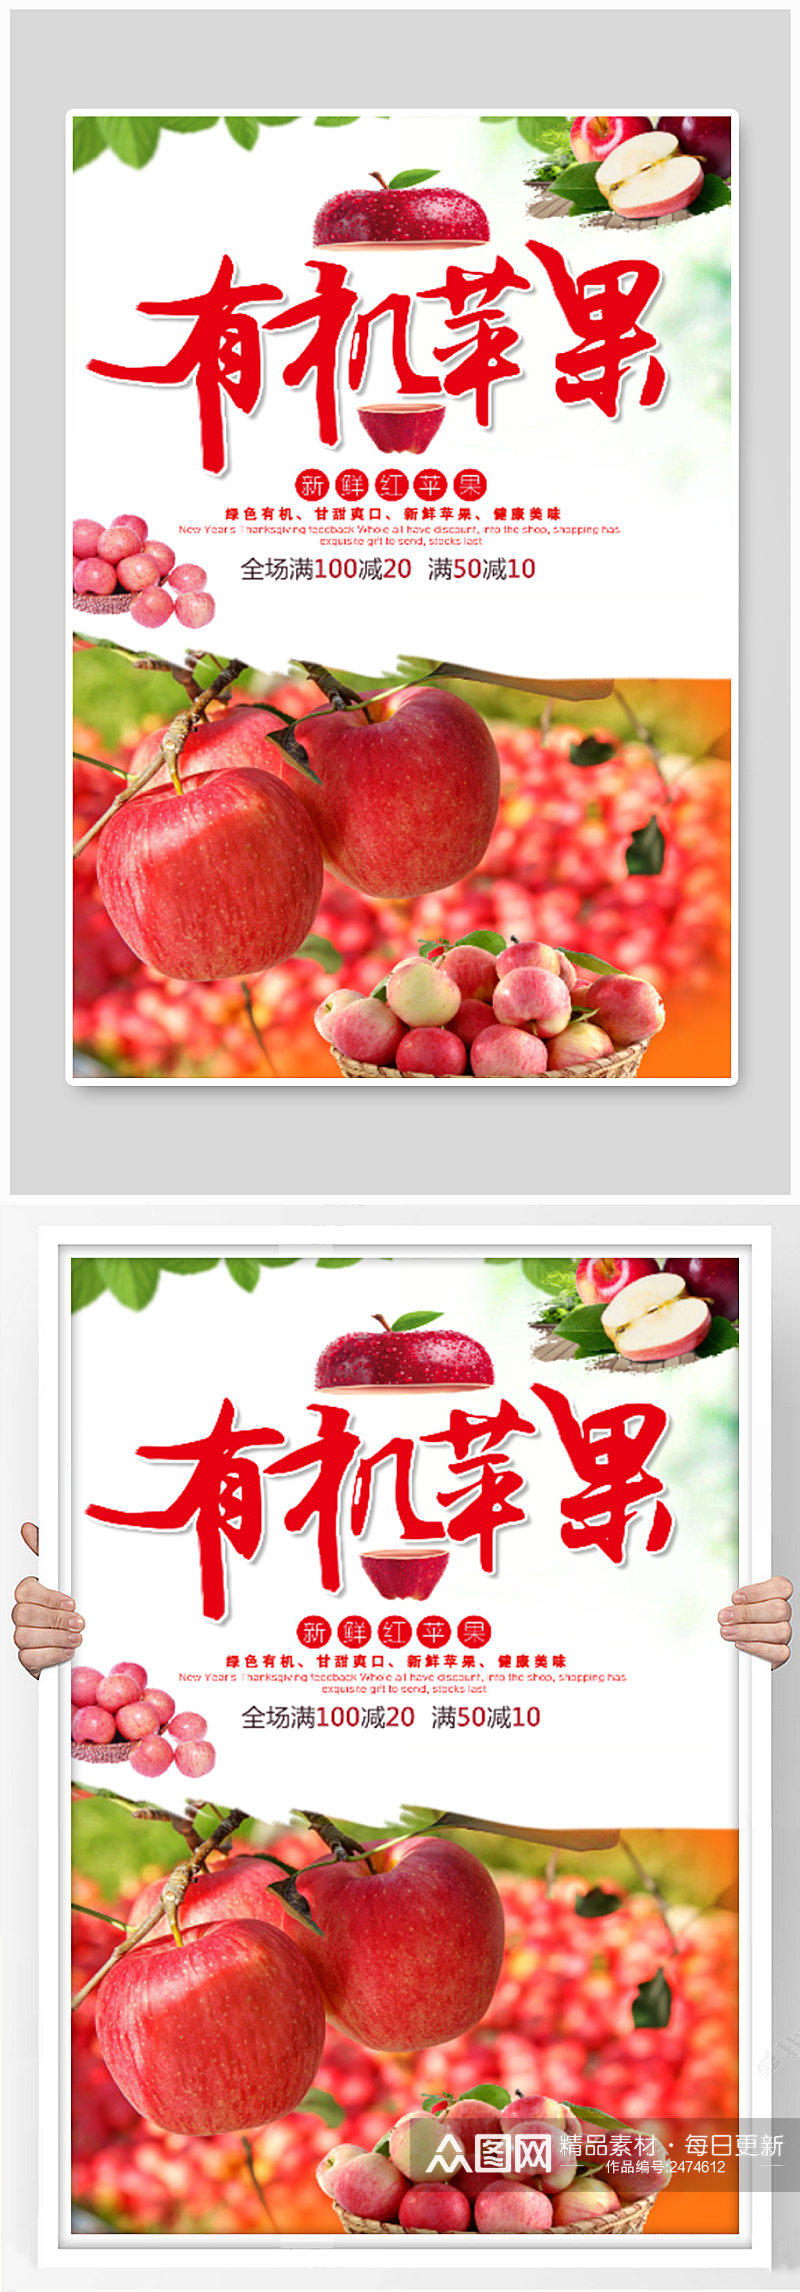 水果店苹果满减活动海报素材